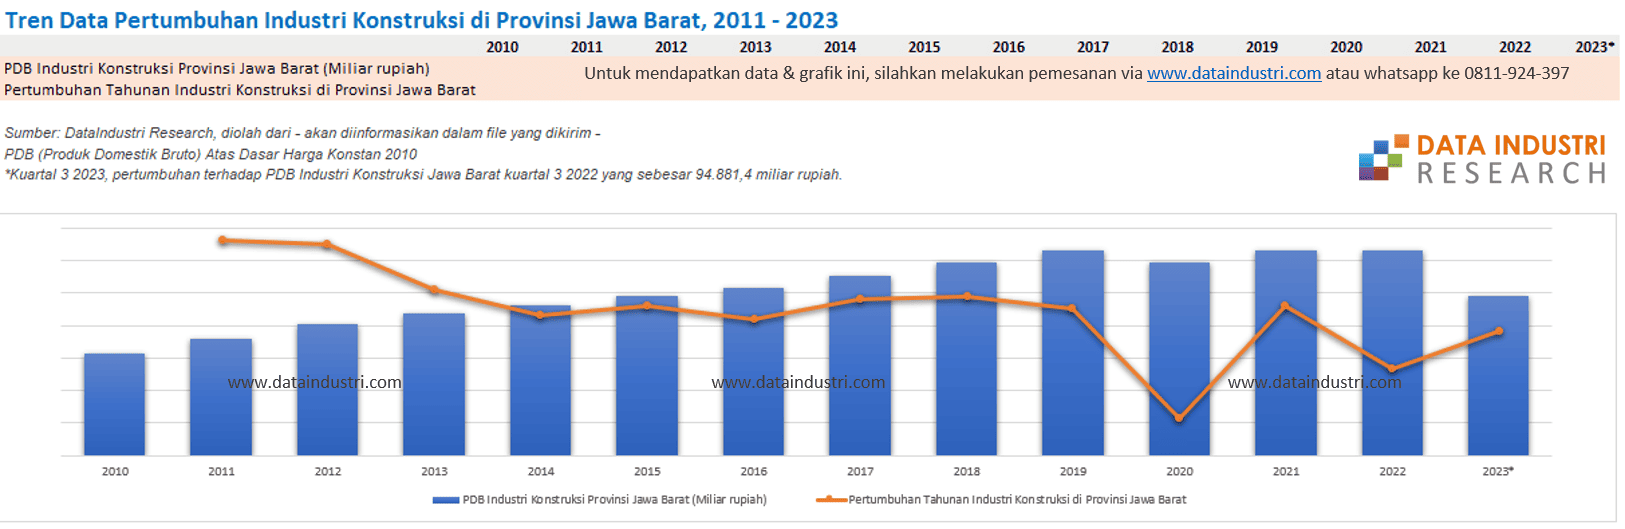 Tren Data Pertumbuhan Industri Konstruksi di Provinsi Jawa Barat, 2011 - 2023